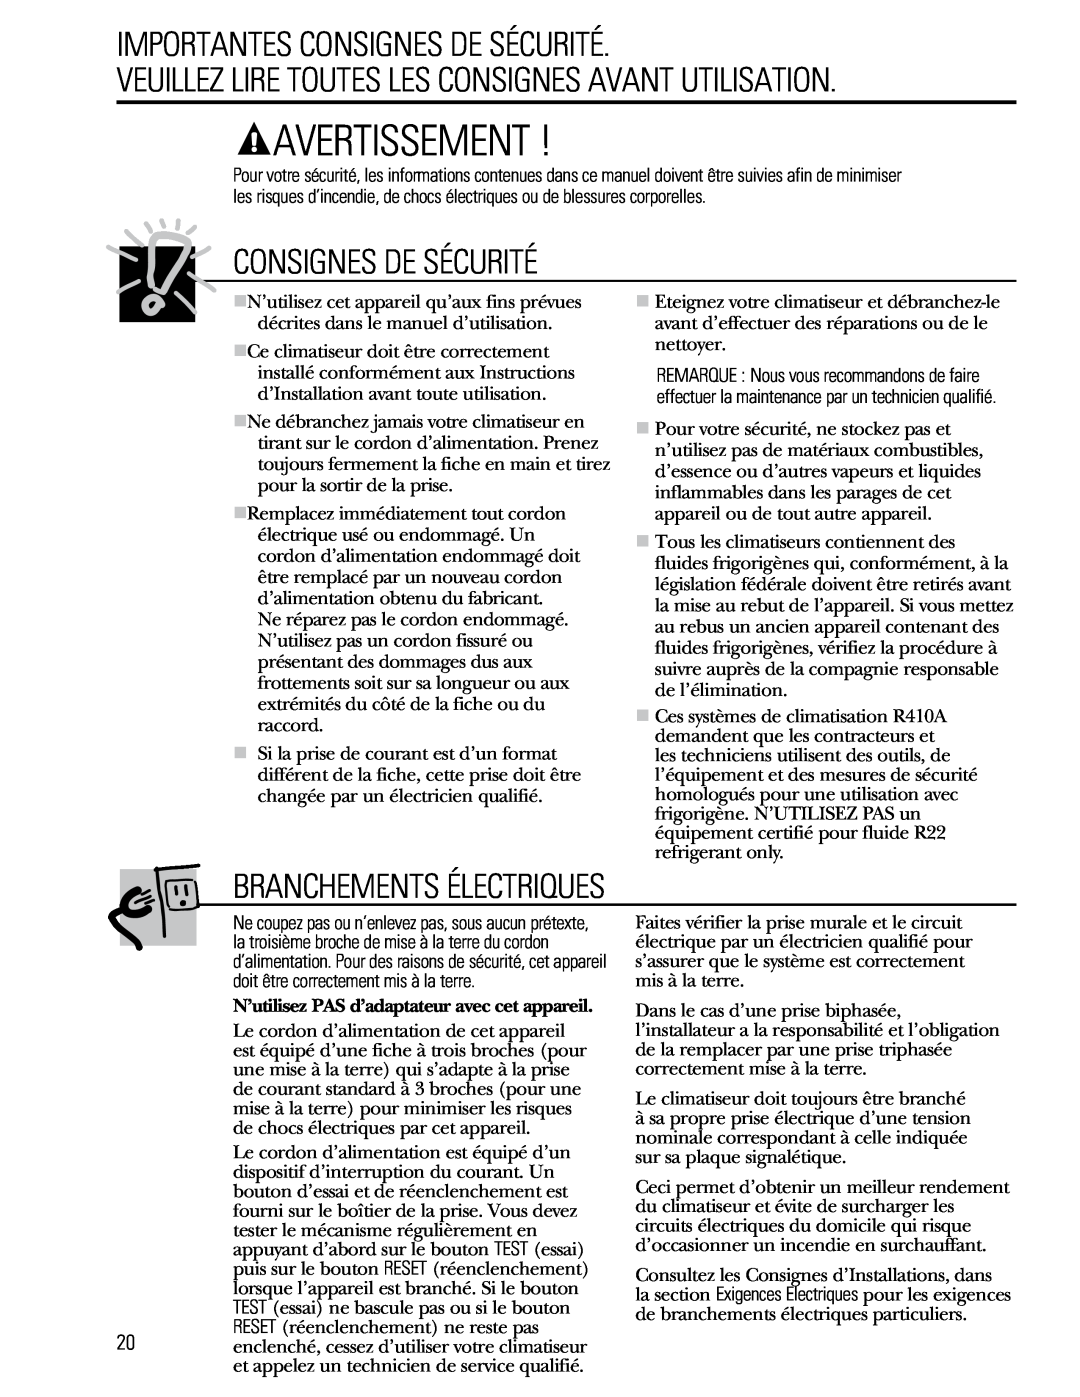 GE 880 installation instructions Avertissement, Importantes Consignes De Sécurité, Branchements Électriques 